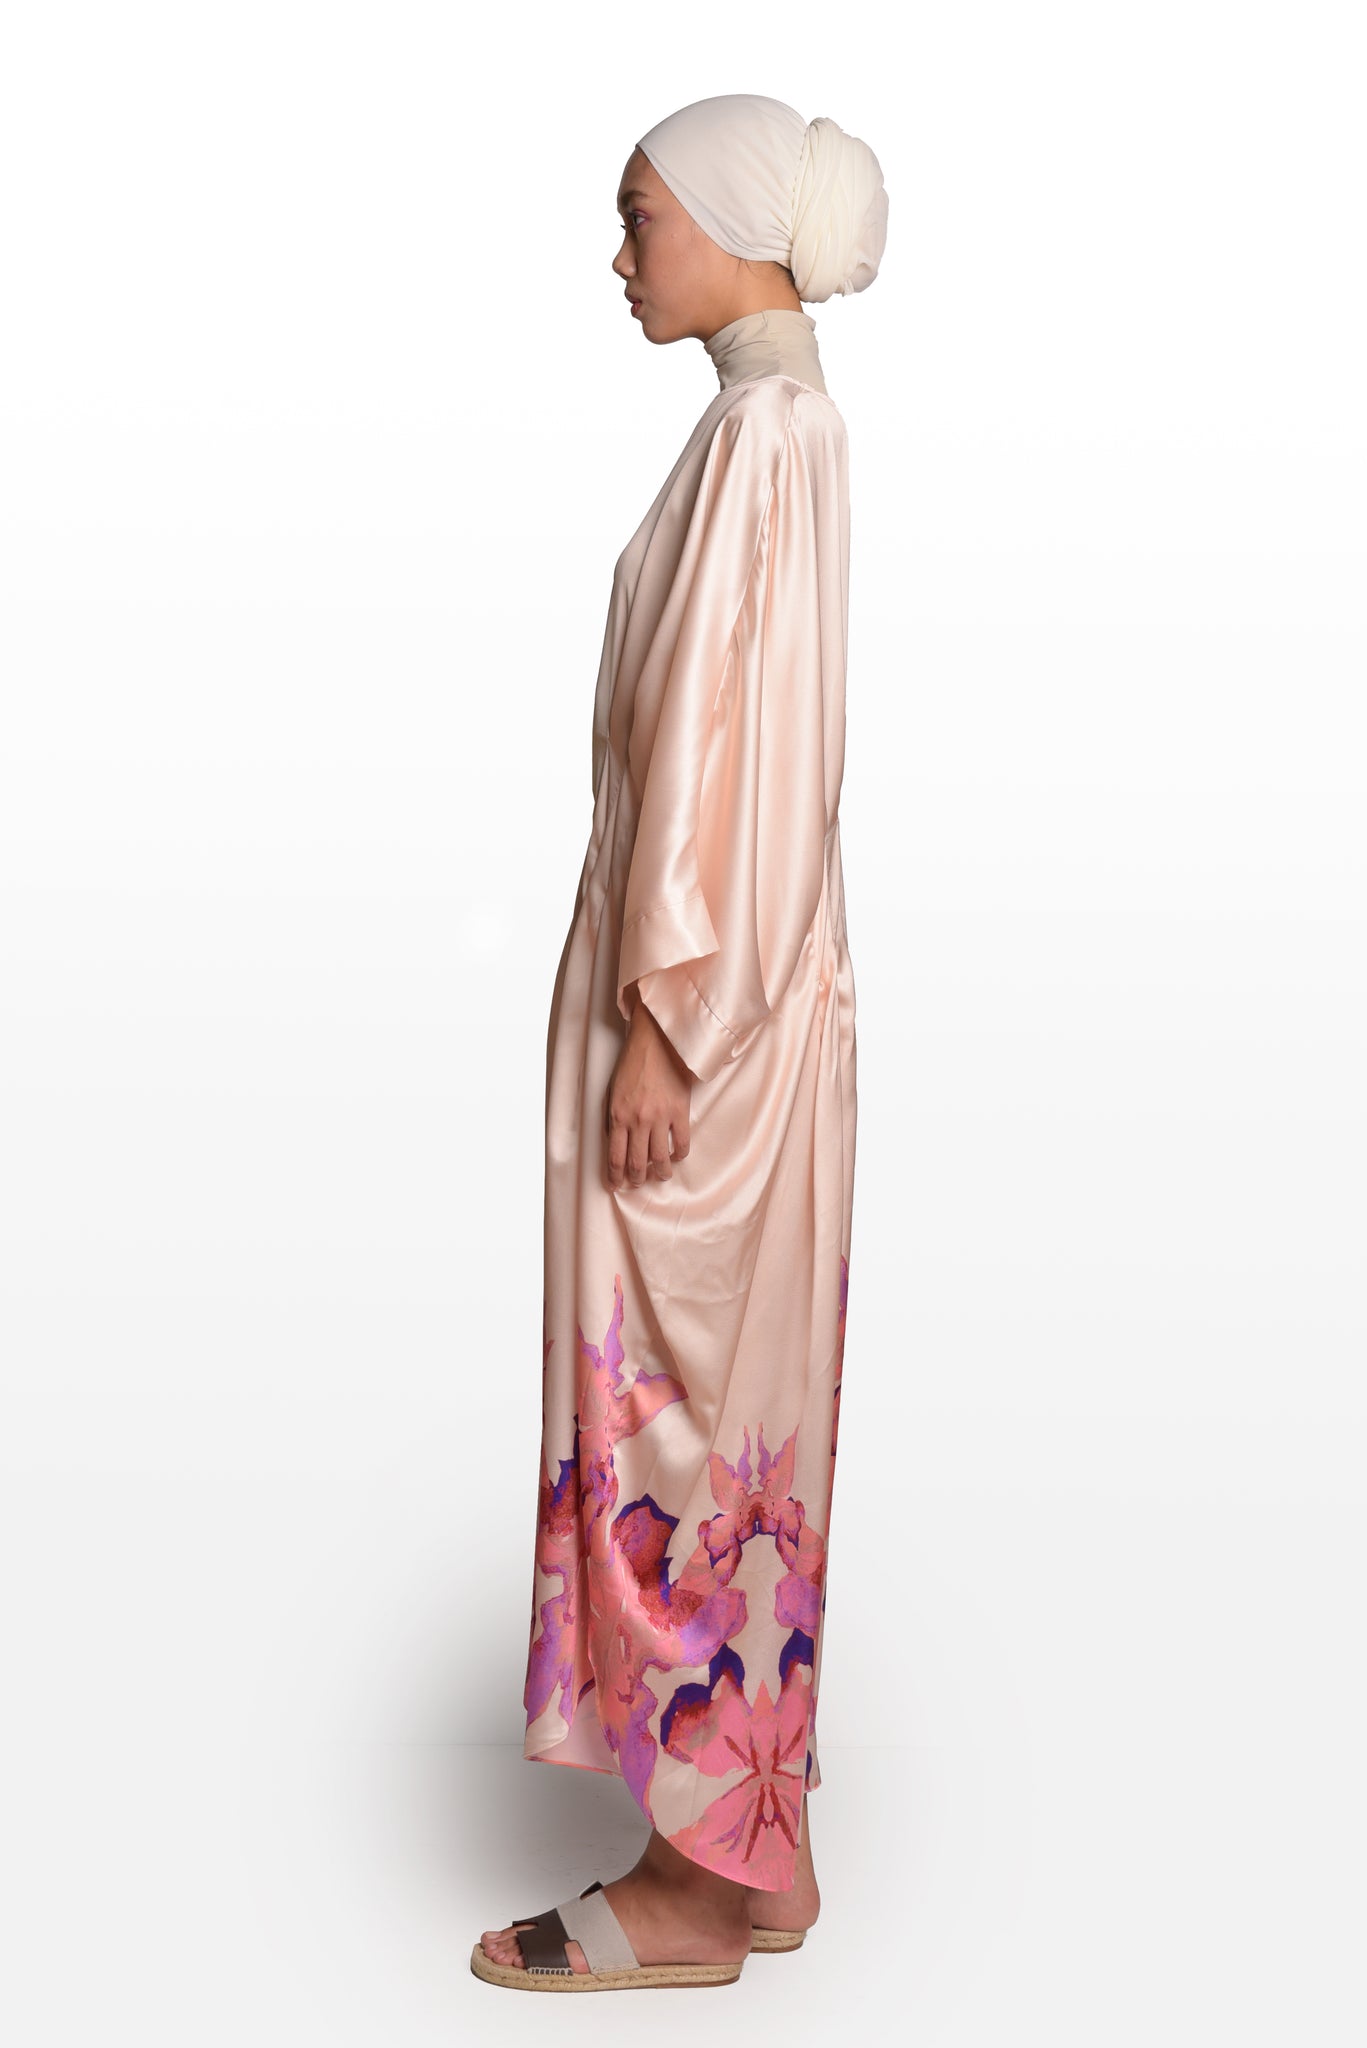 Kundang Pleated Kaftan in Pink and Beige : 3thelabel x Nazleen Noor